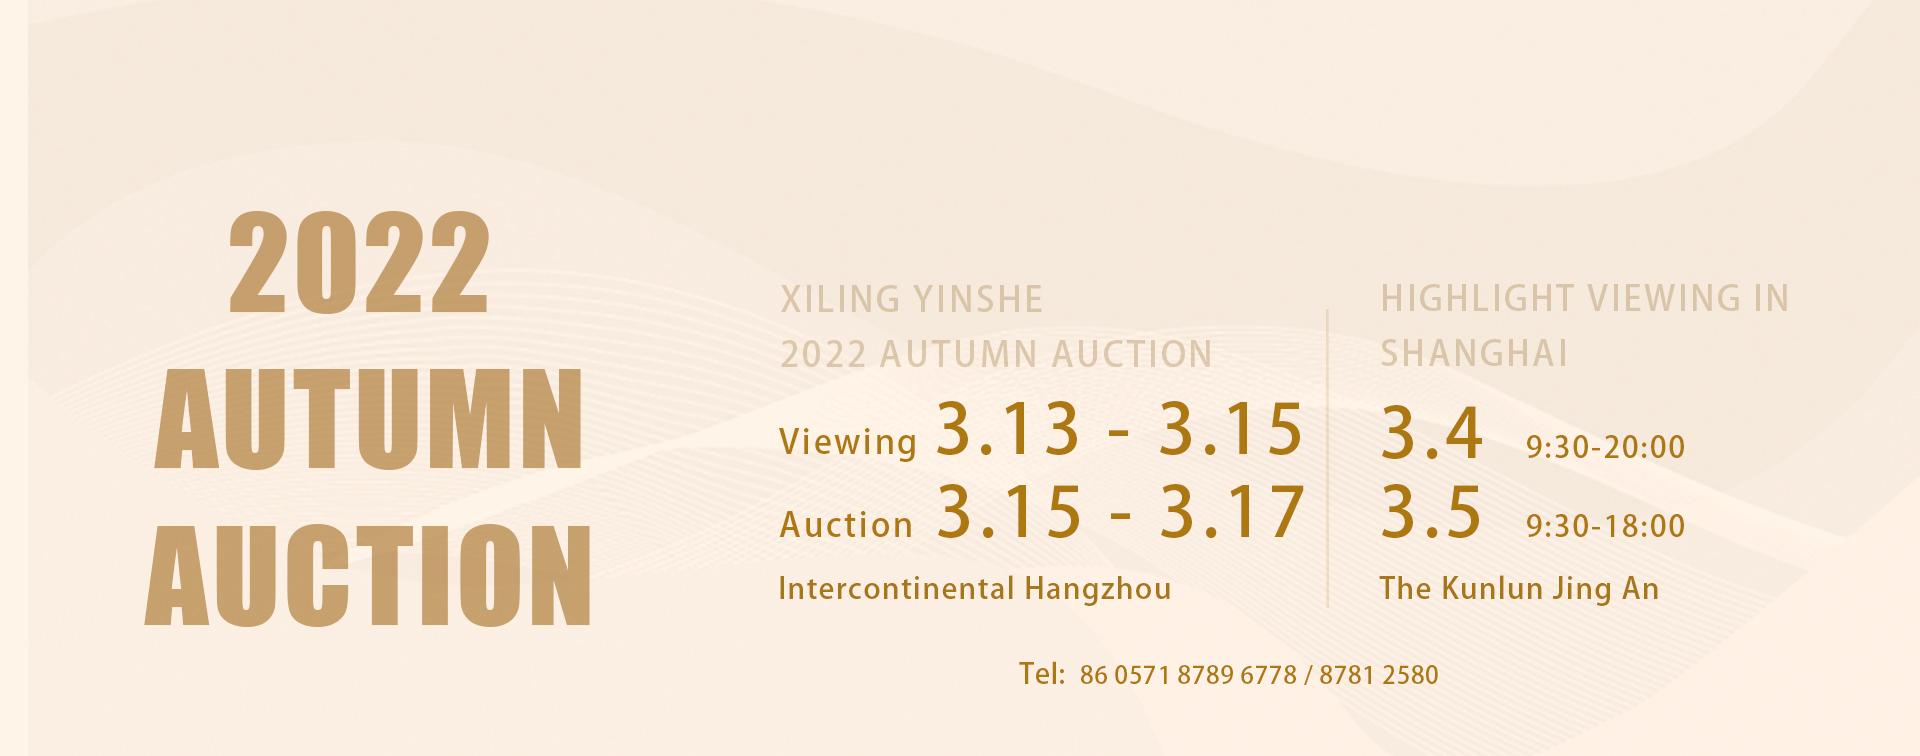 Xiling Yinshe 2022 Autumn Auction